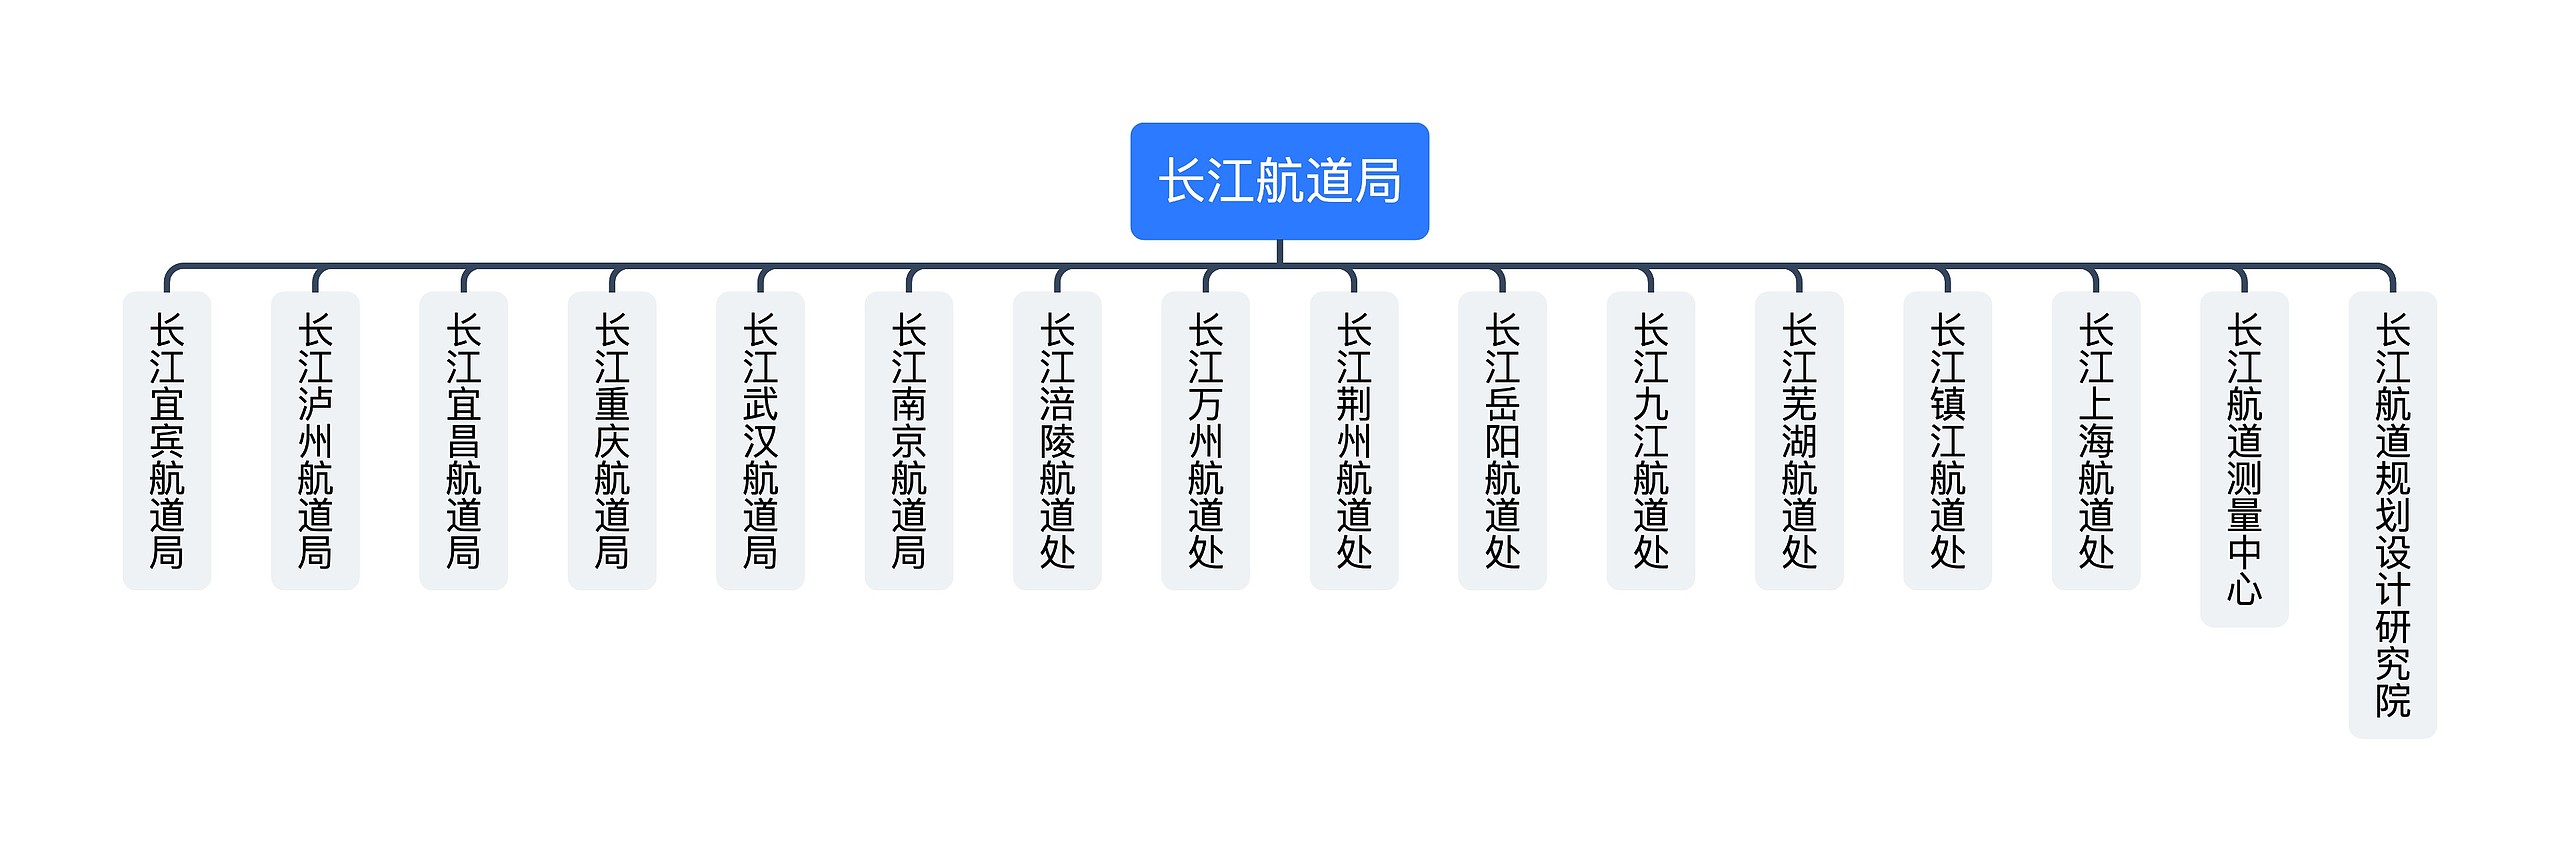 ﻿长江航道局组织架构图